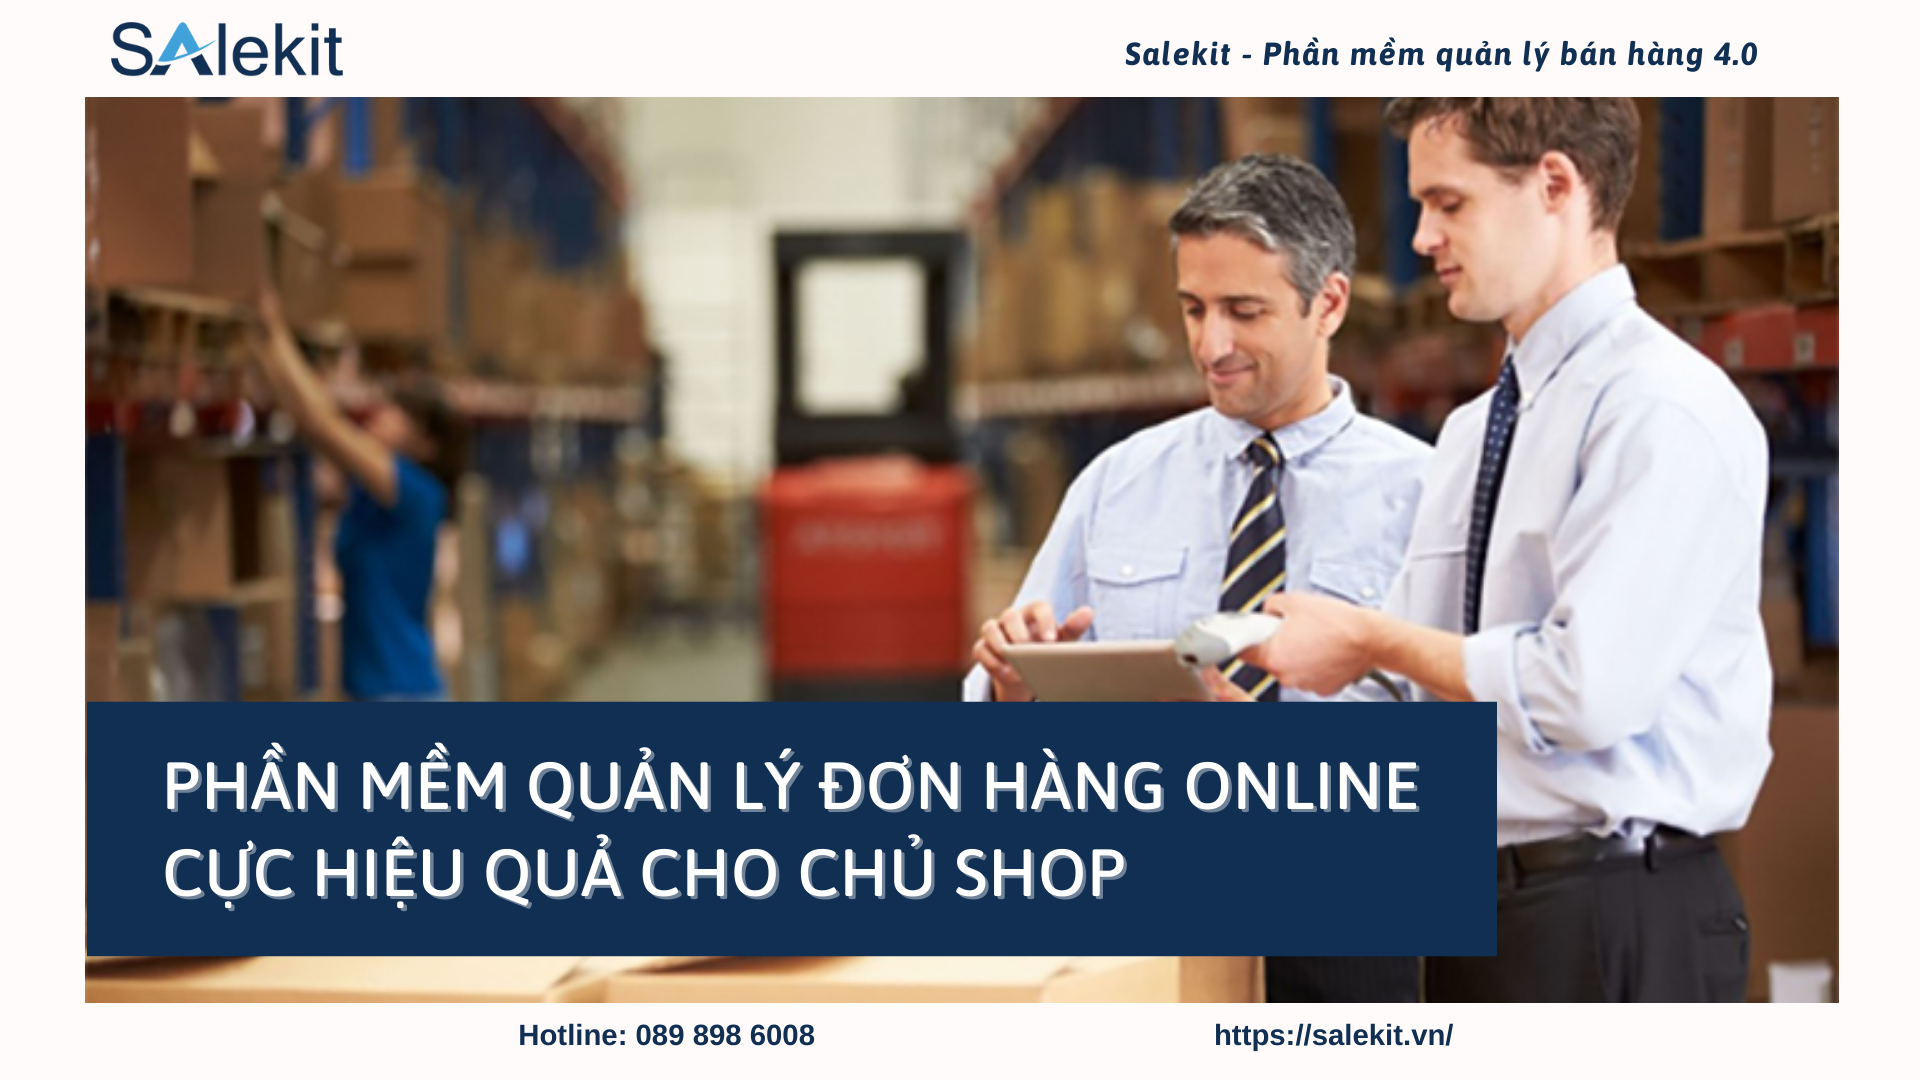 Giới thiệu phần mềm quản lý đơn hàng online cực hiệu quả cho chủ Shop